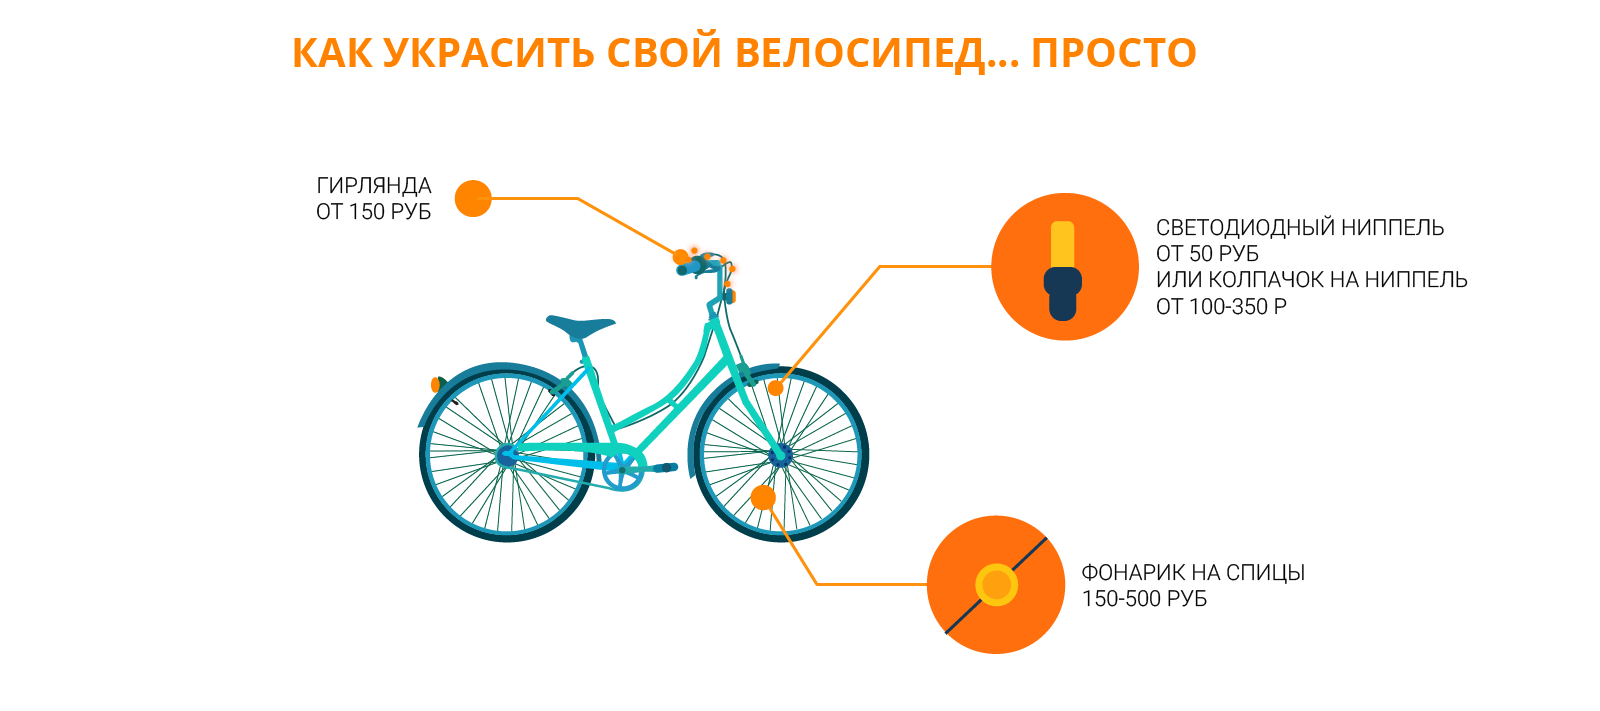 Как сделать велосипед из будущего своими руками?